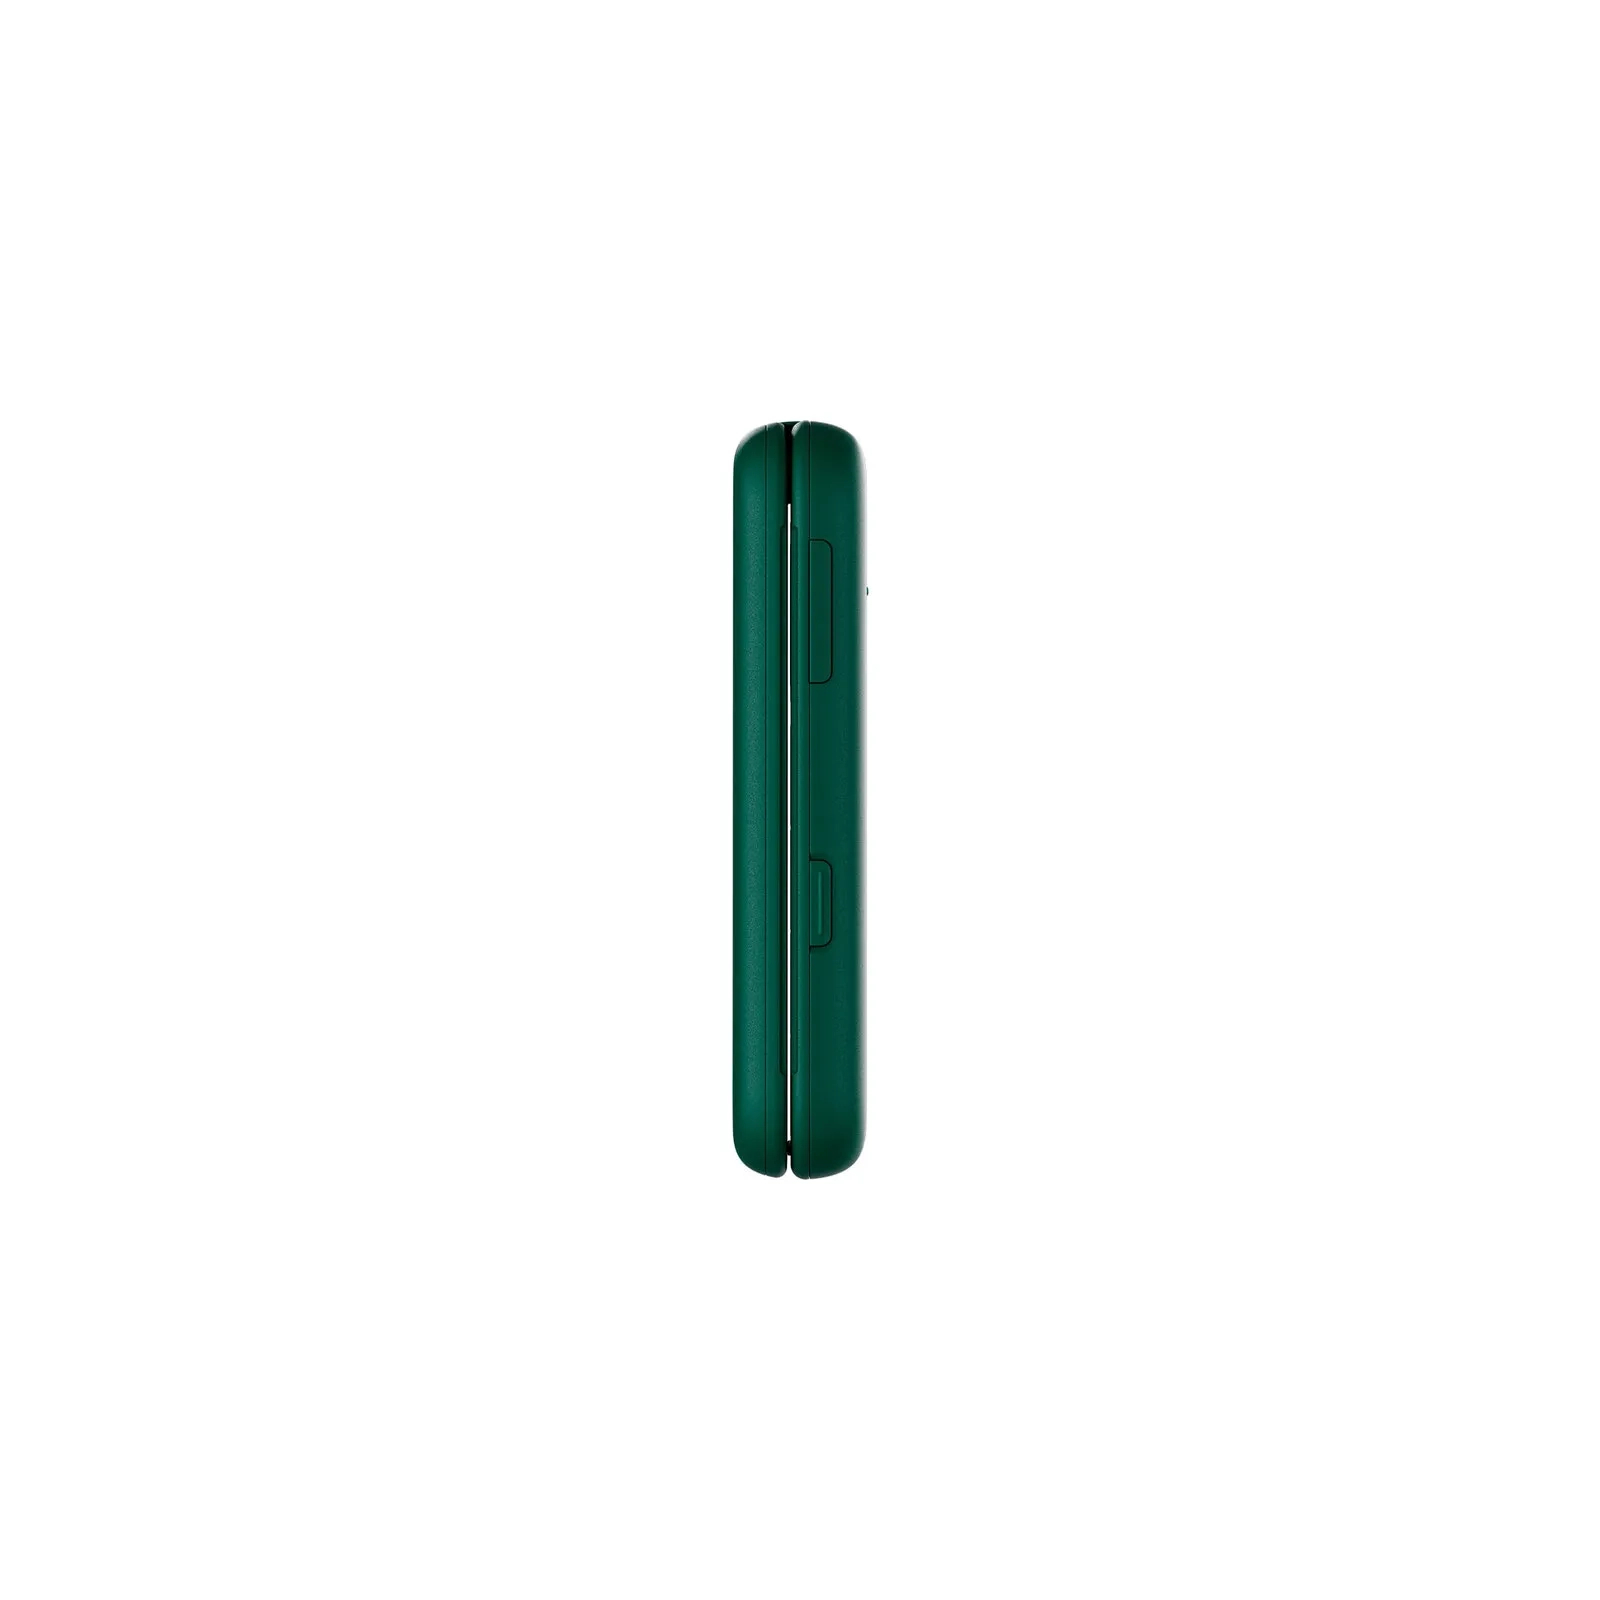 Мобильный телефон Nokia 2660 Flip Green изображение 5